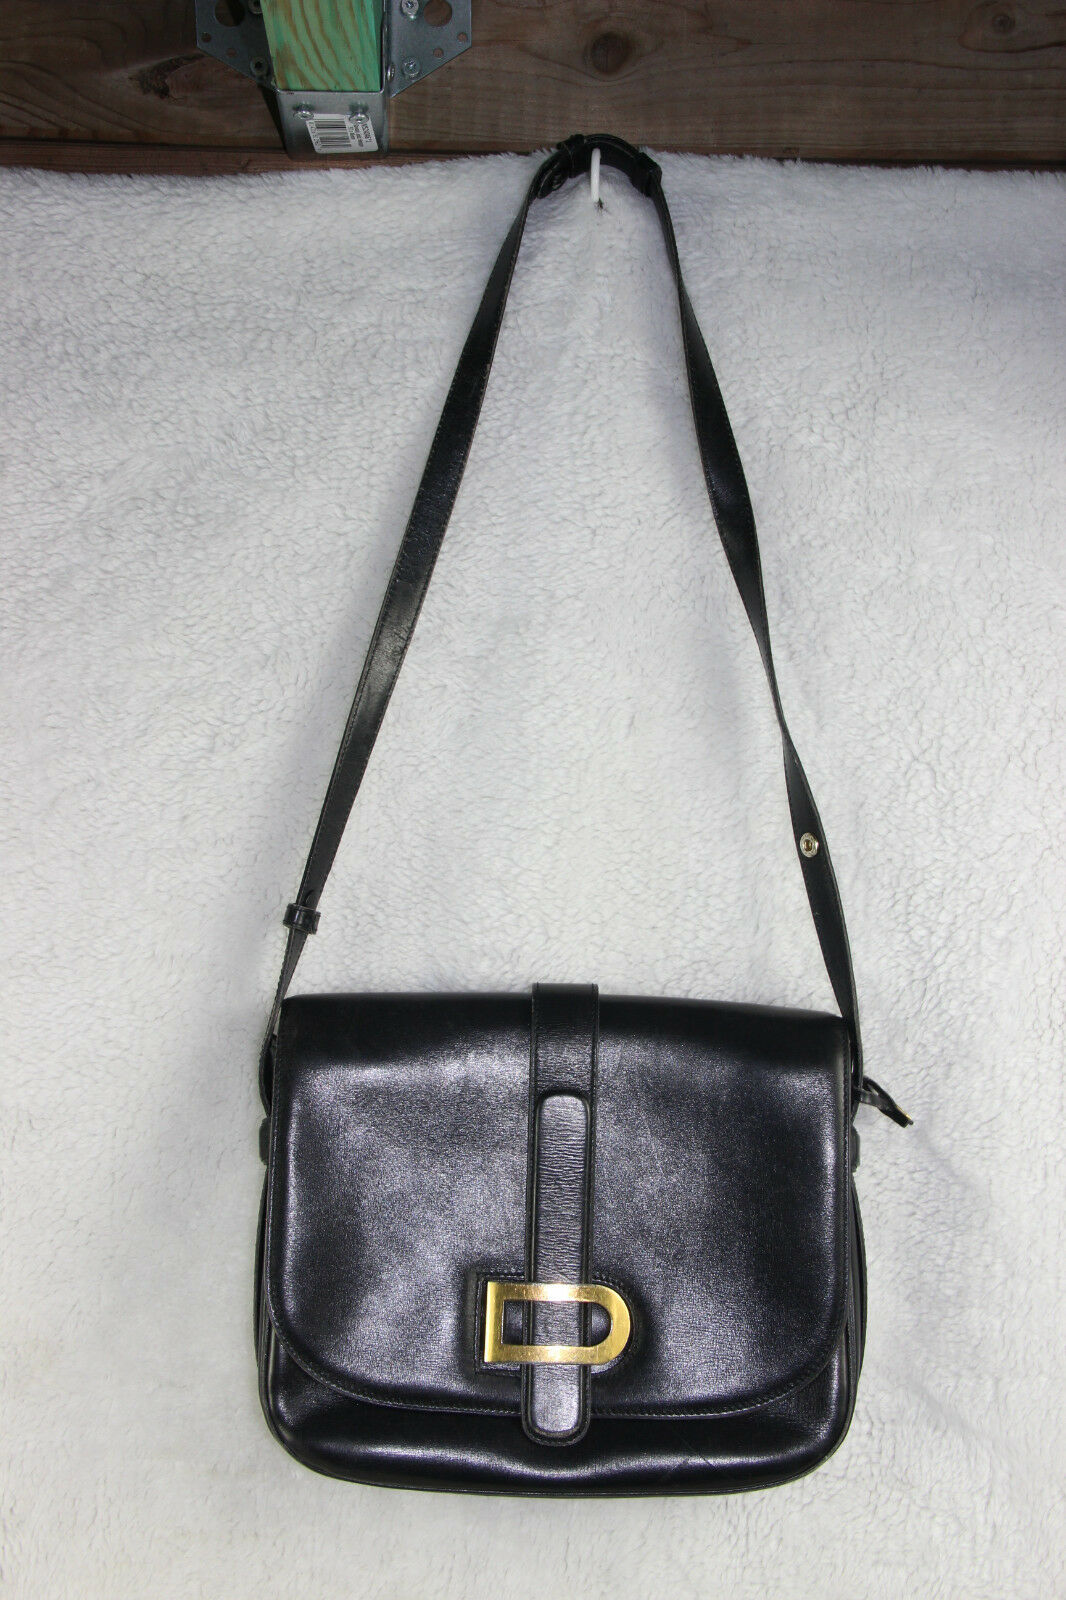 Delvaux Leather HAND BAG MADE IN FRANCE Shoulder Bag Black w